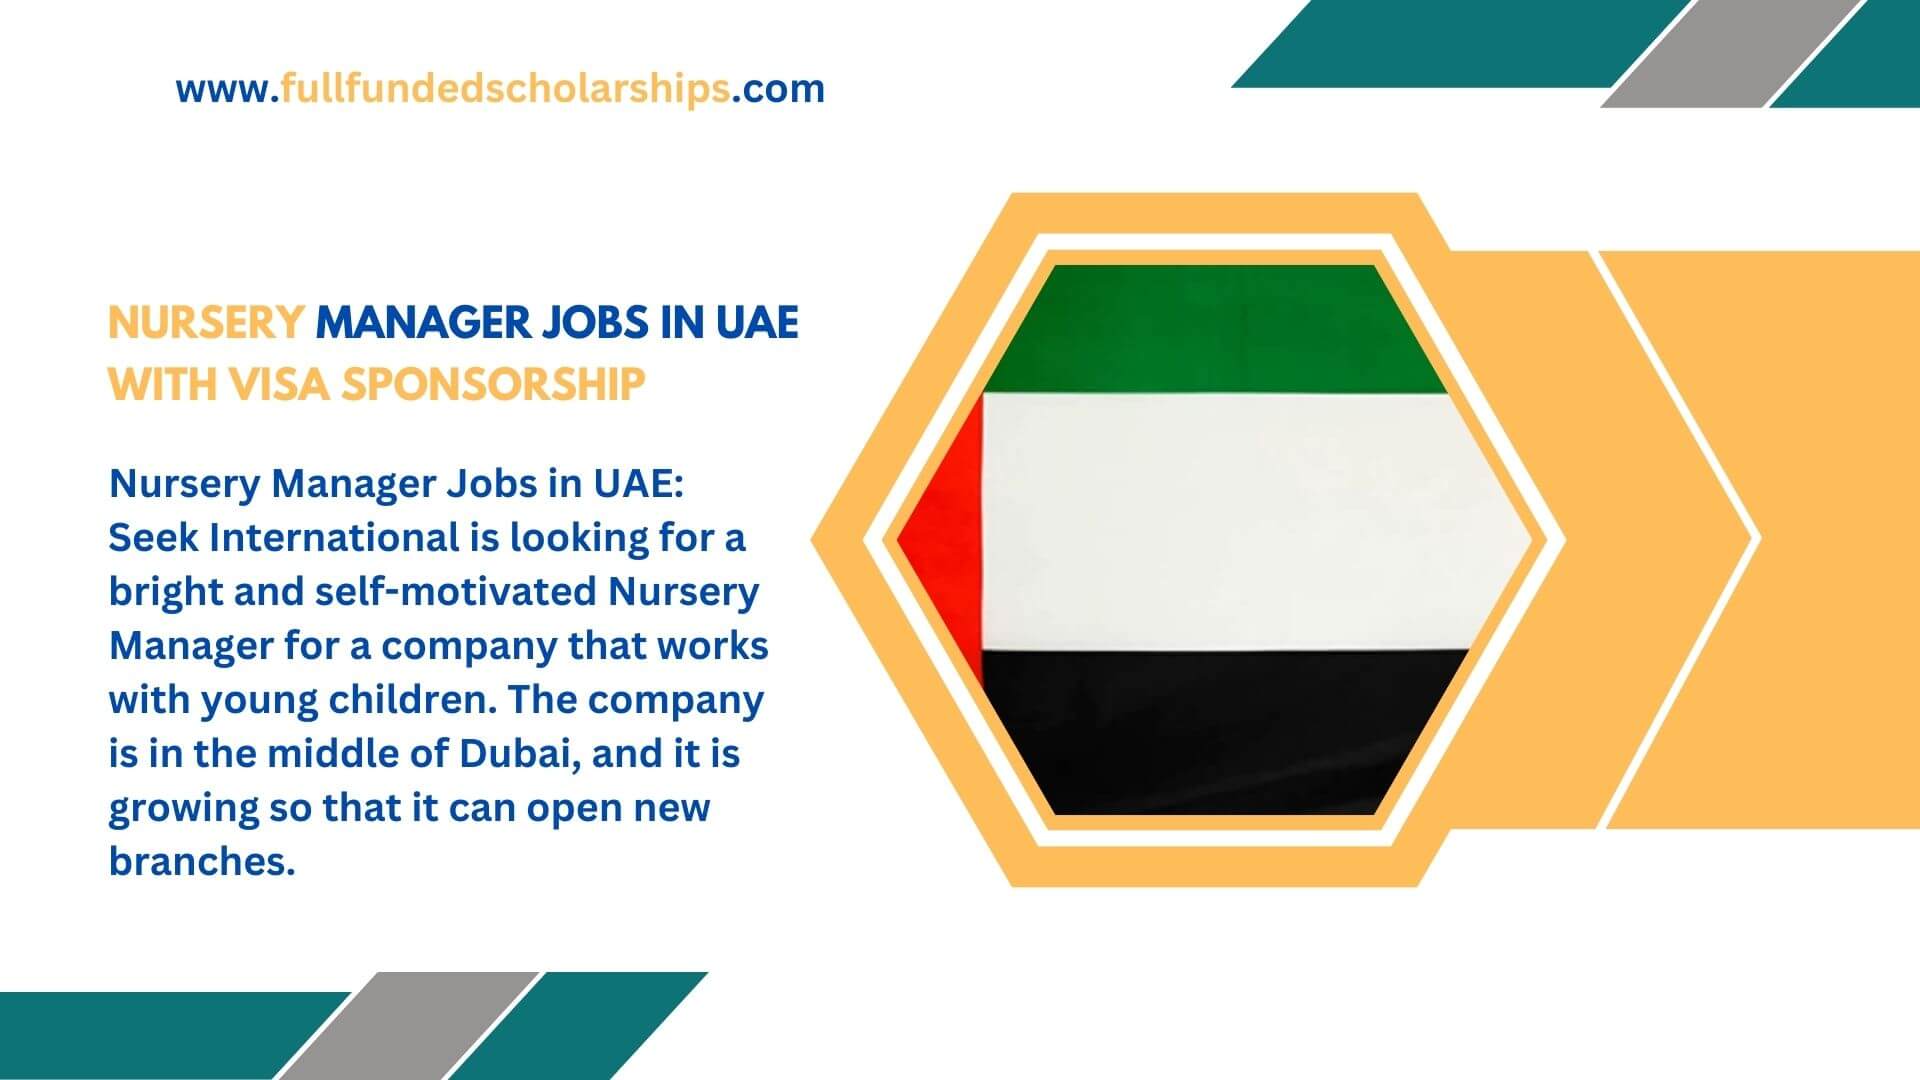 Nursery Manager Jobs in UAE with Visa Sponsorship